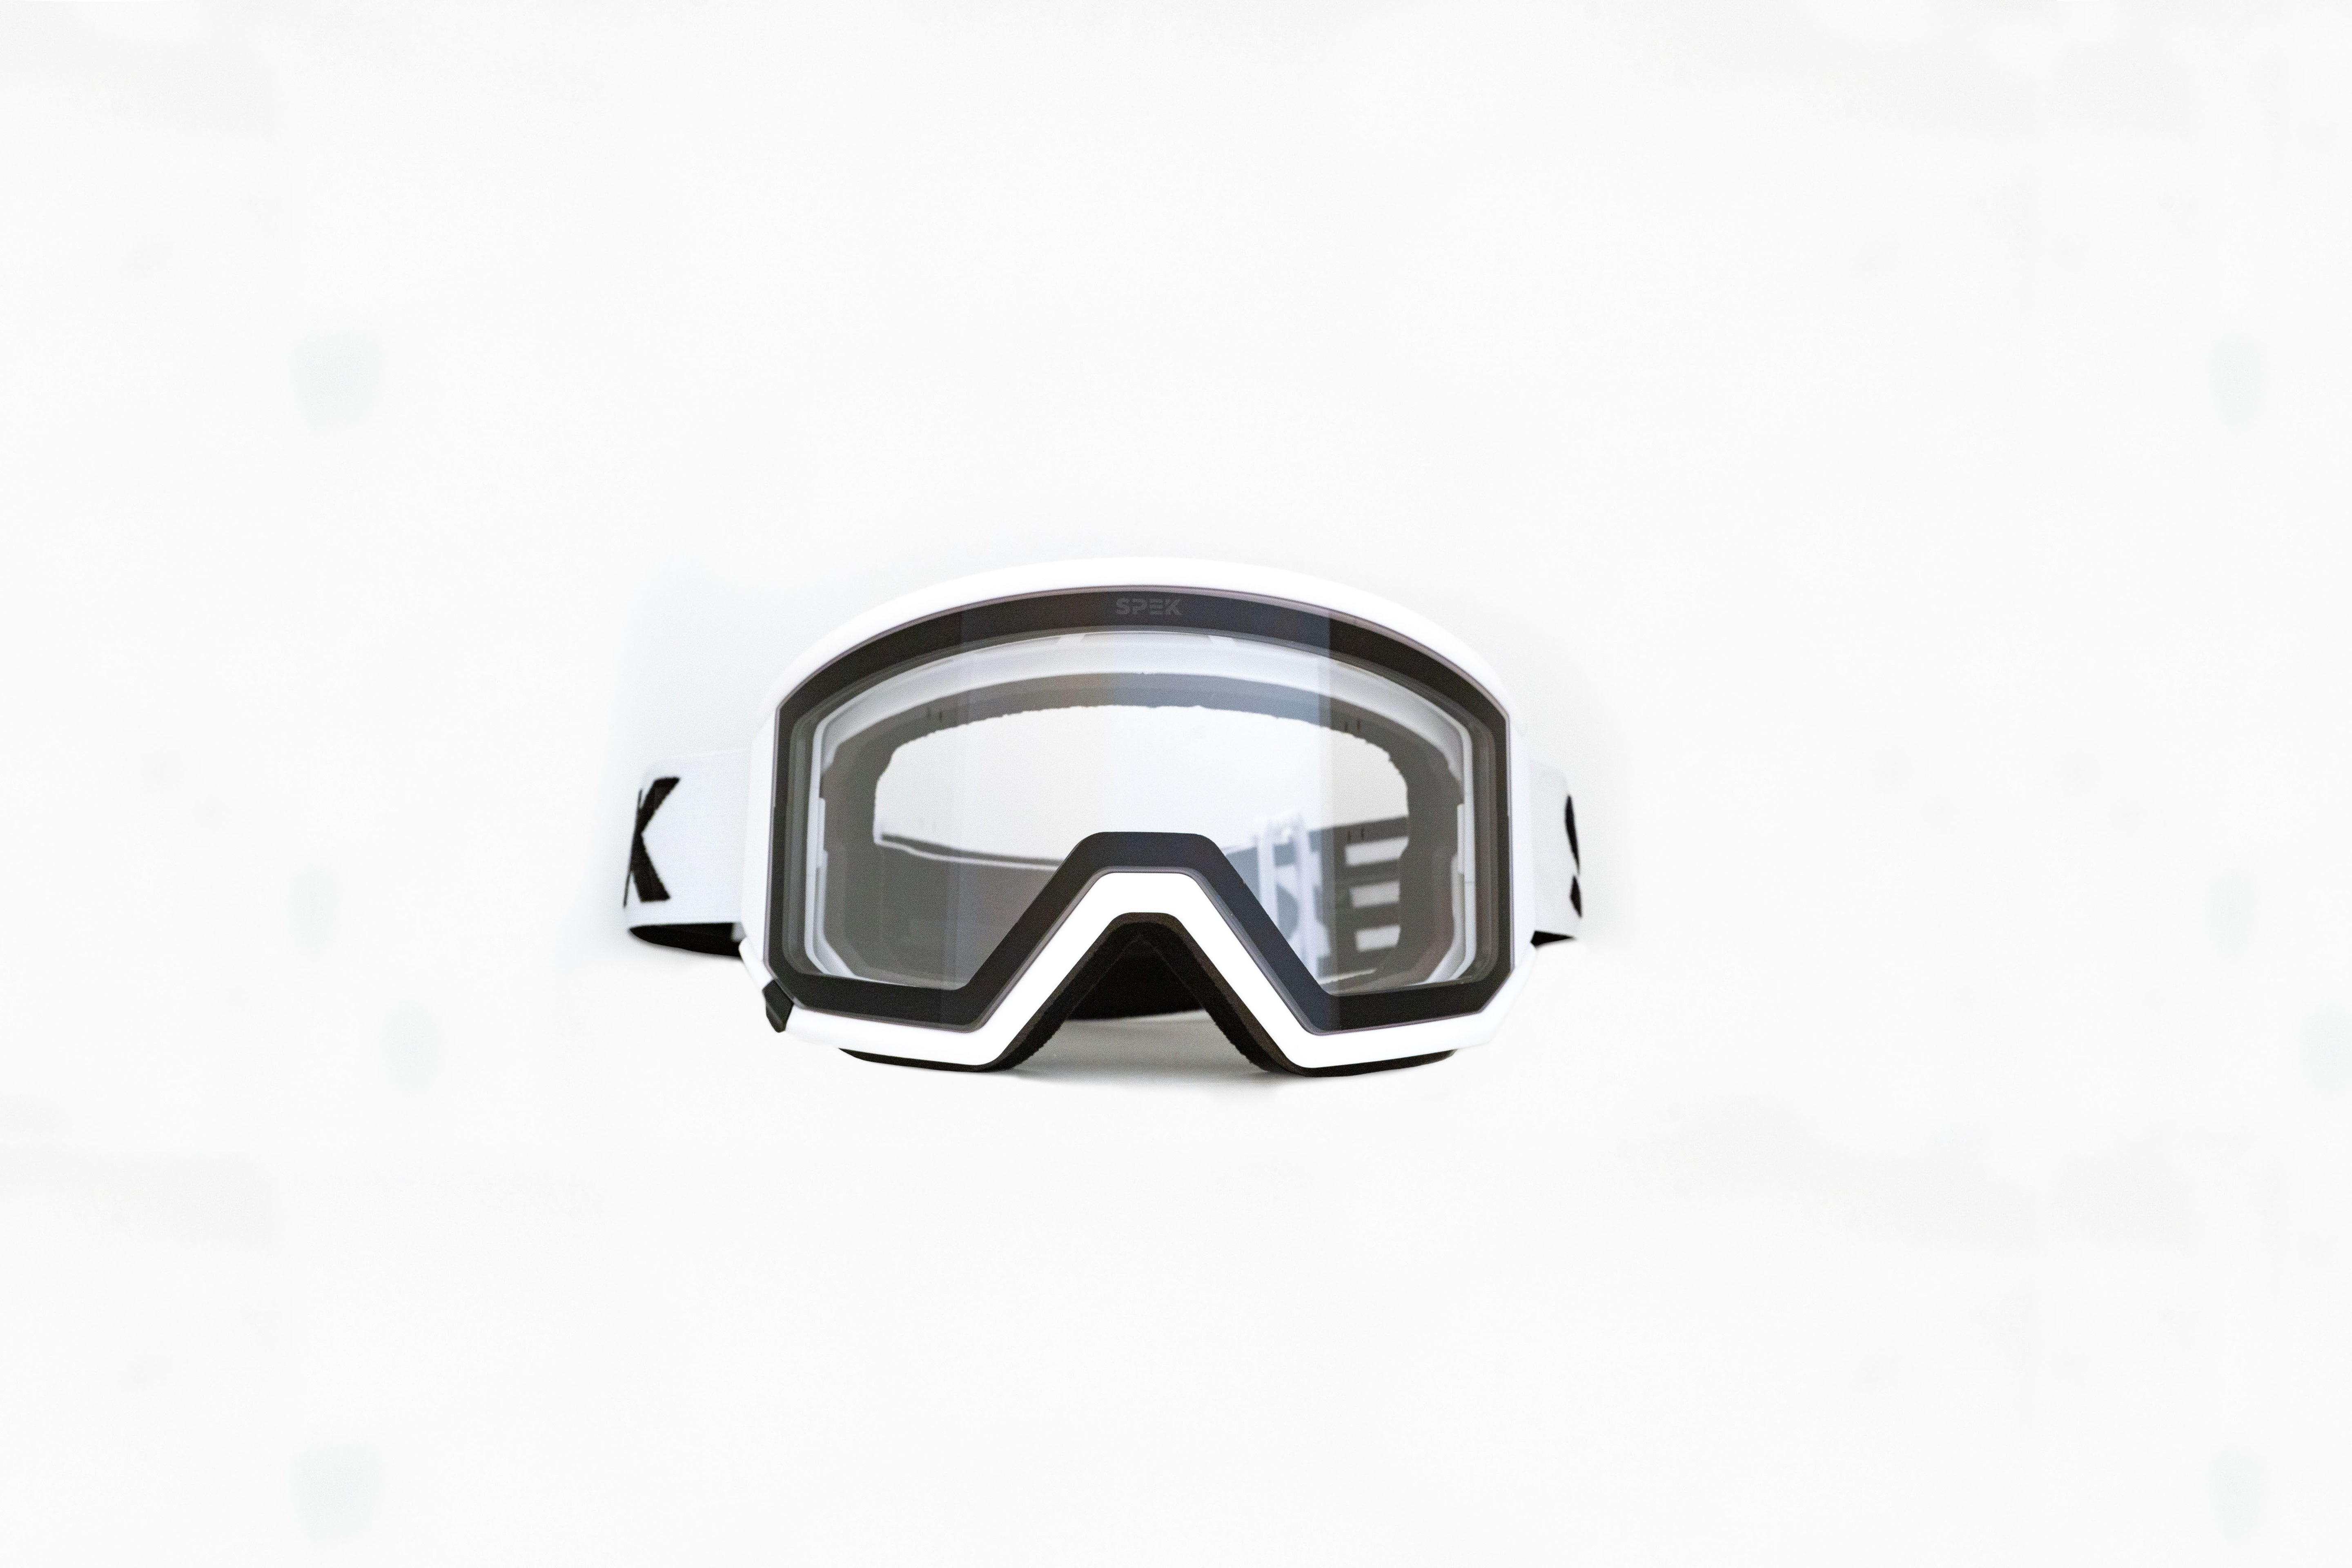 ARTIC lunette de ski